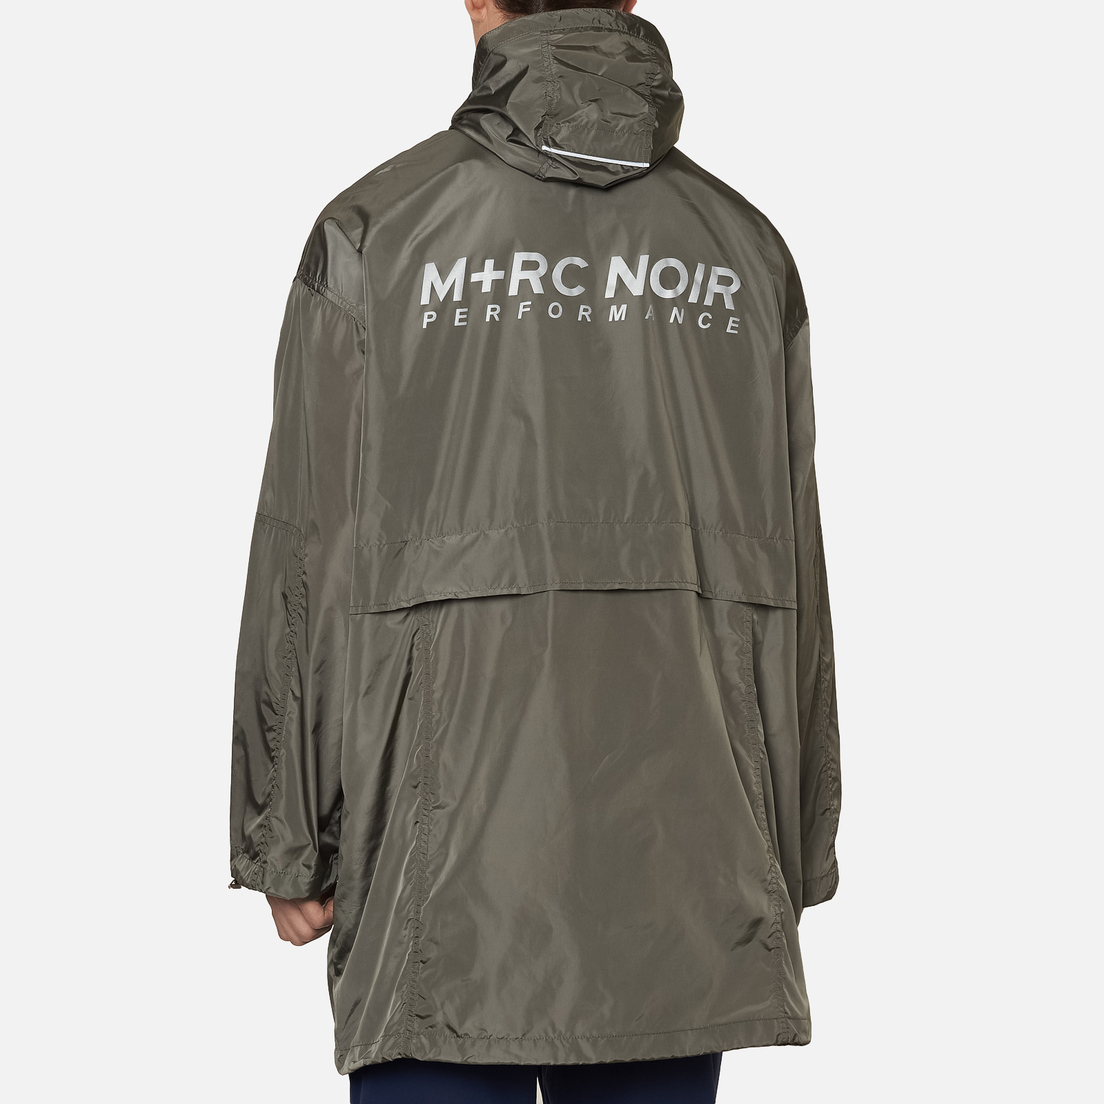 M+RC Noir Мужская куртка парка Performance